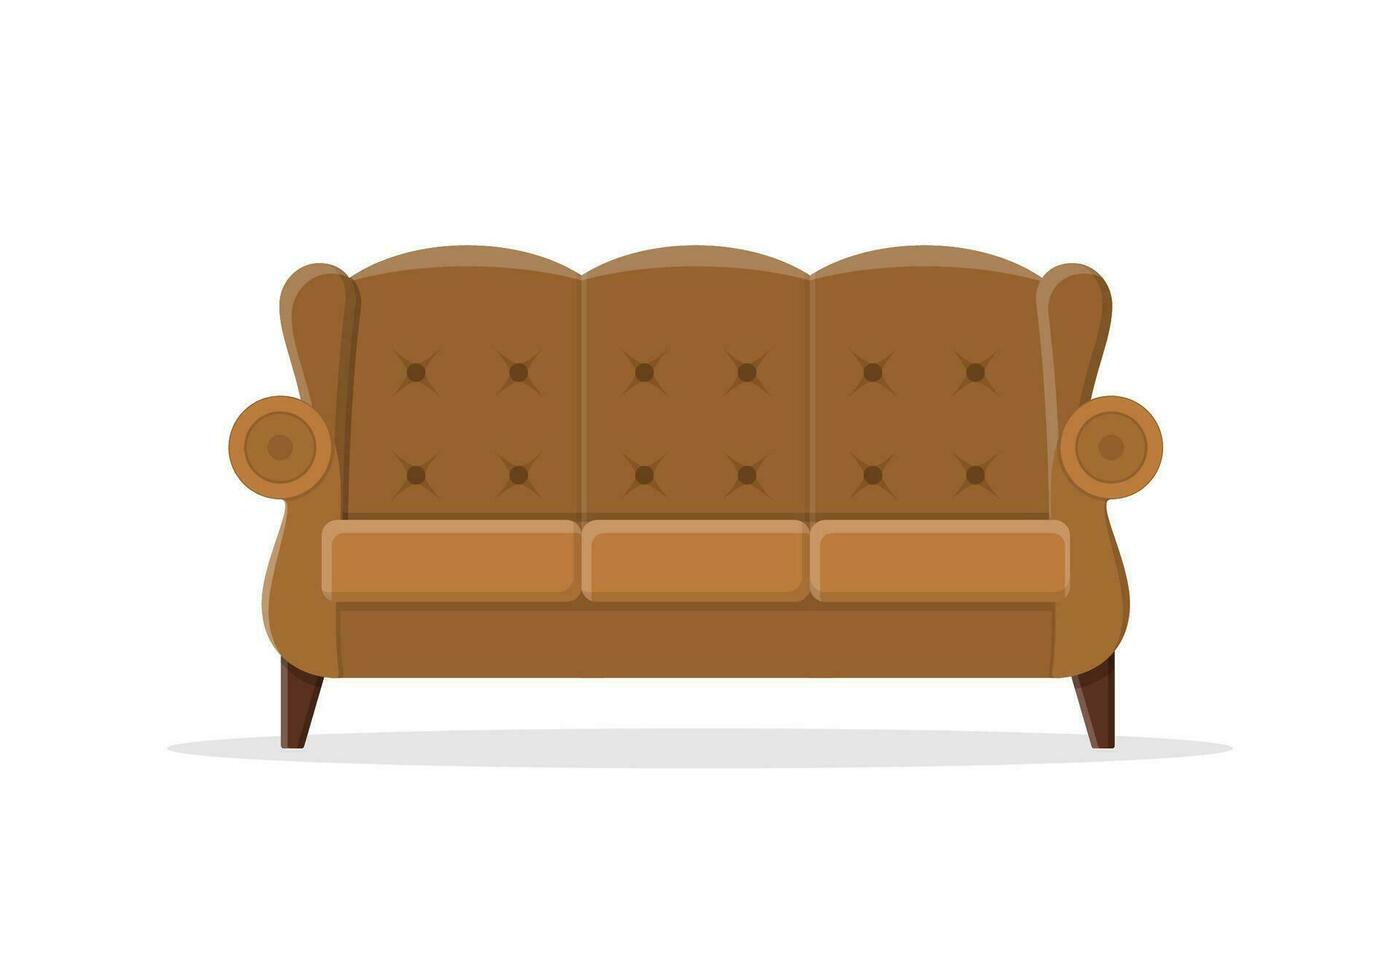 stilvoll komfortabel Sofa im eben Stil isoliert auf Weiß Hintergrund. Couch Innere von ein Leben Zimmer oder Büro. Sanft Möbel zum sich ausruhen und Entspannung heim. Vektor Illustration.